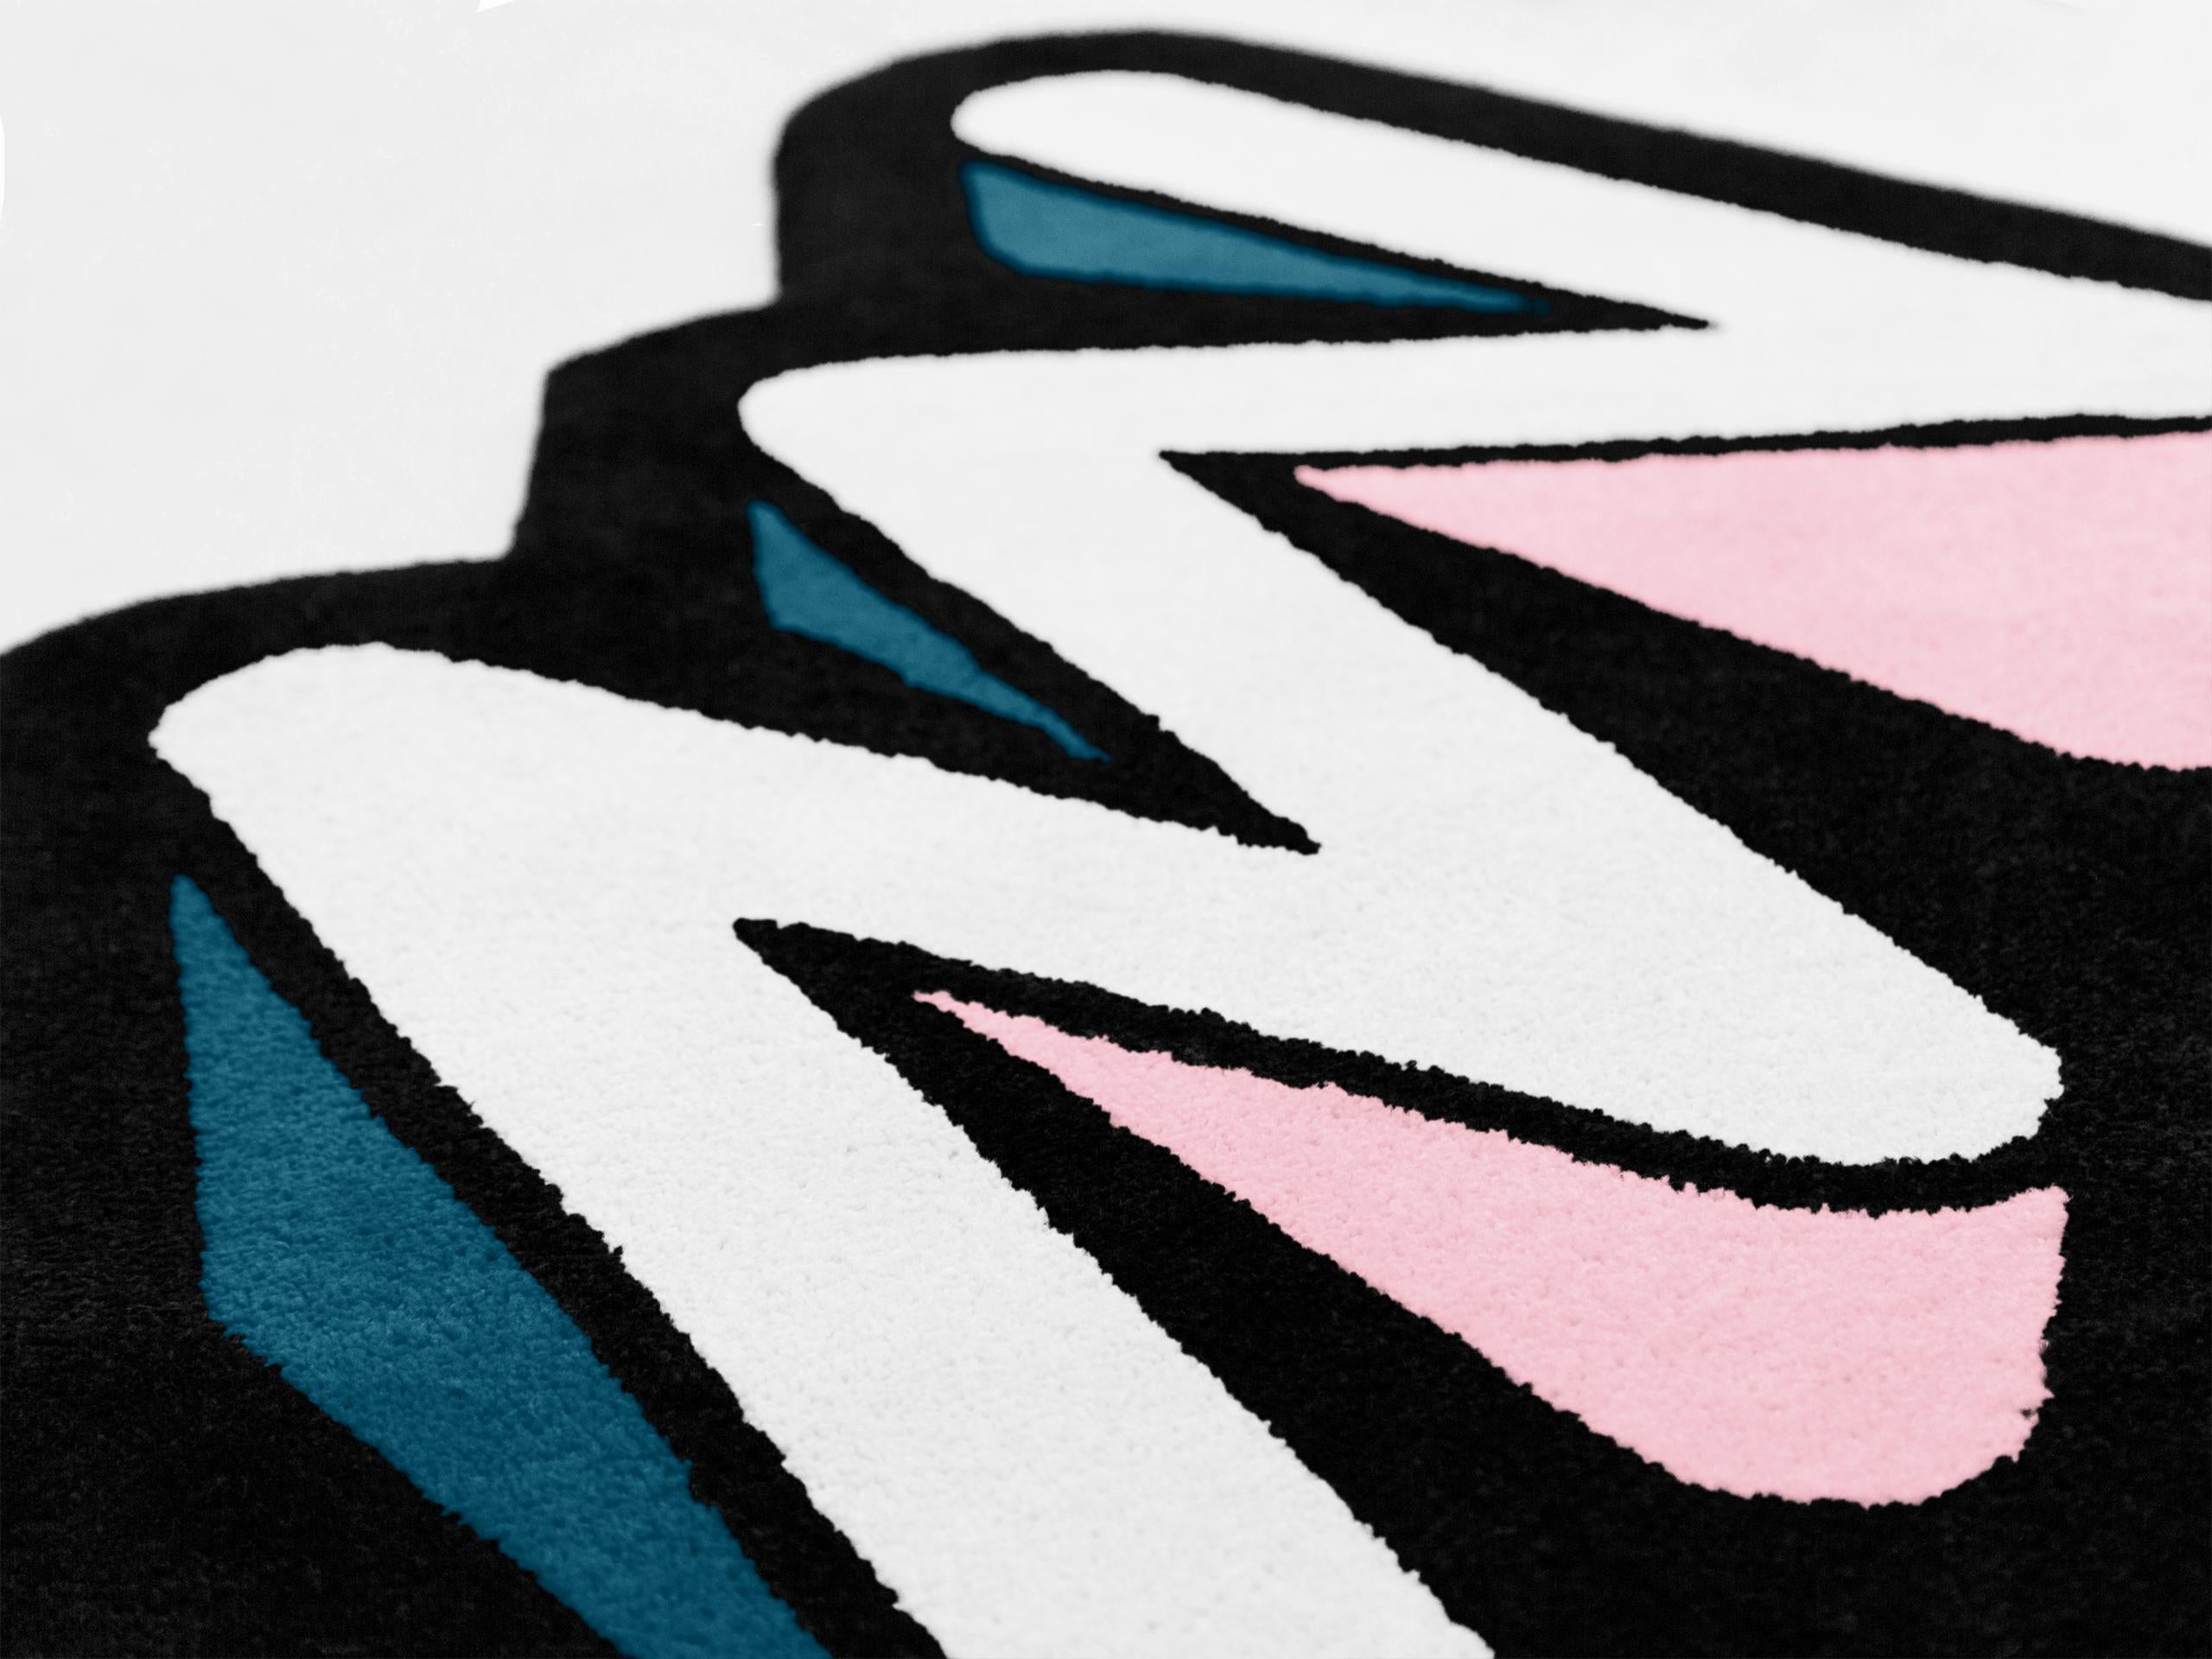 Inspiriert von Graffiti, ist diese Teppichkollektion mit einfachen und klar definierten Merkmalen, ausdrucksstarken Linien und Details gestaltet, die Licht, Schatten und Tiefe suggerieren.
Die Herstellungstechnik ist das Tufting: Auf einem